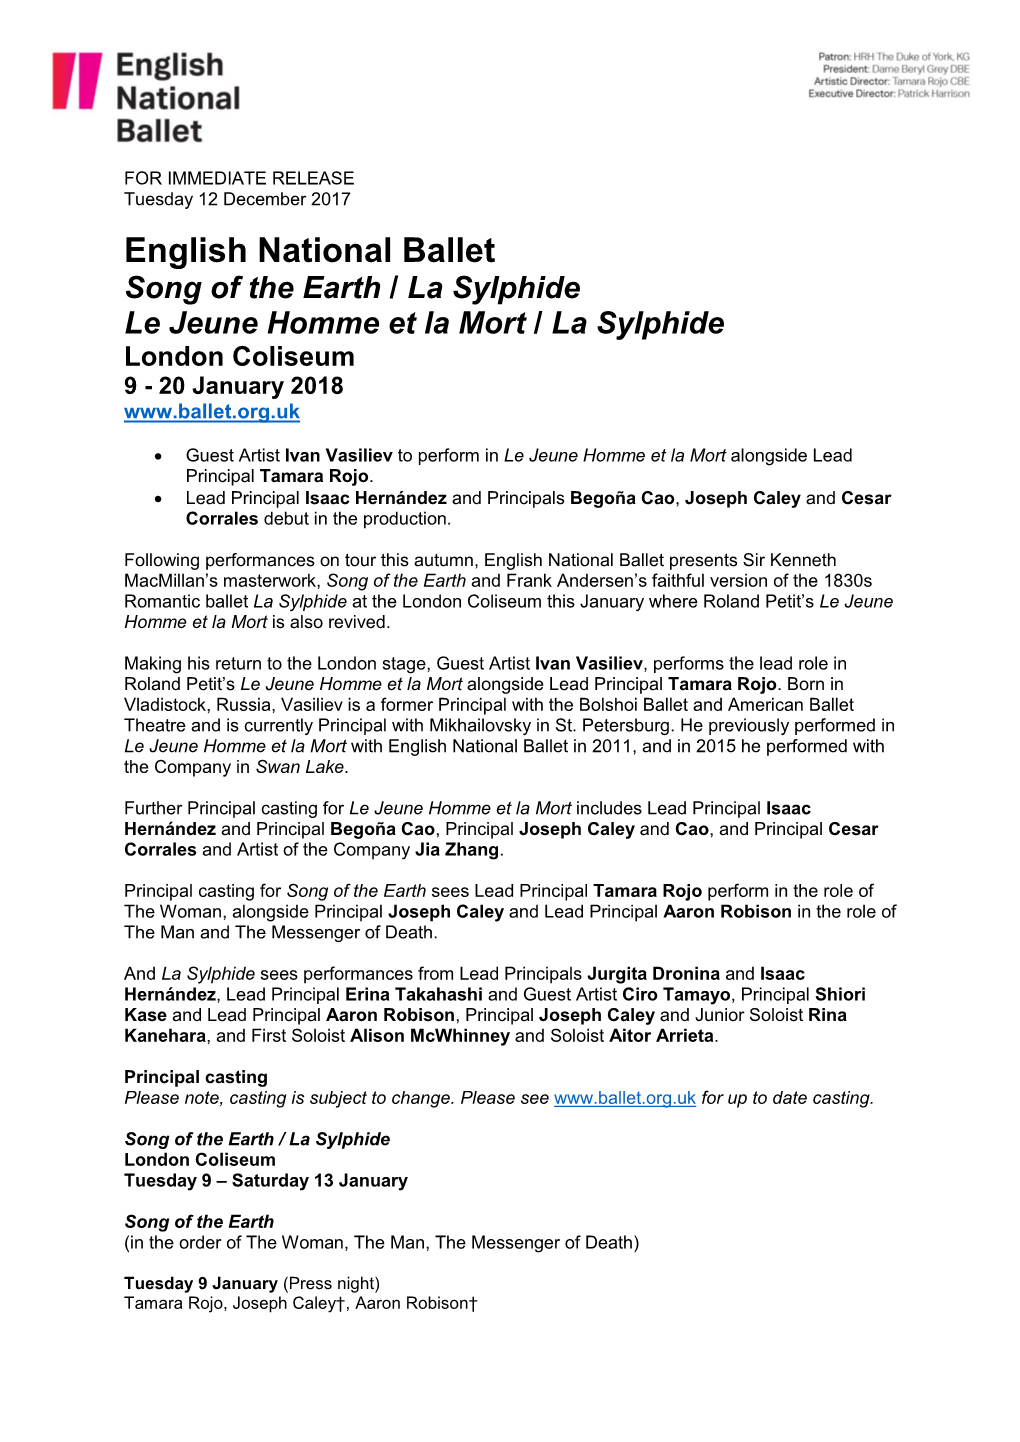 English National Ballet Song of the Earth / La Sylphide Le Jeune Homme Et La Mort / La Sylphide London Coliseum 9 - 20 January 2018